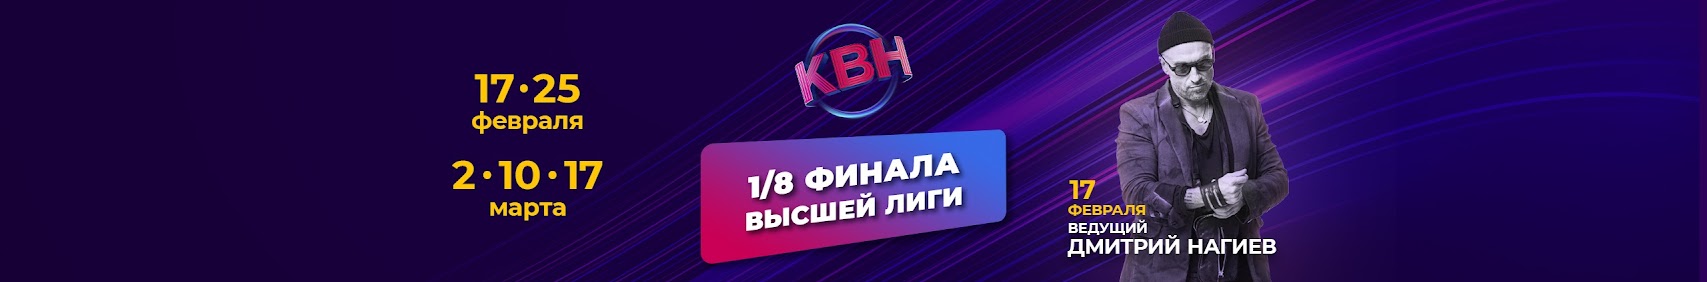 Официальный канал КВН